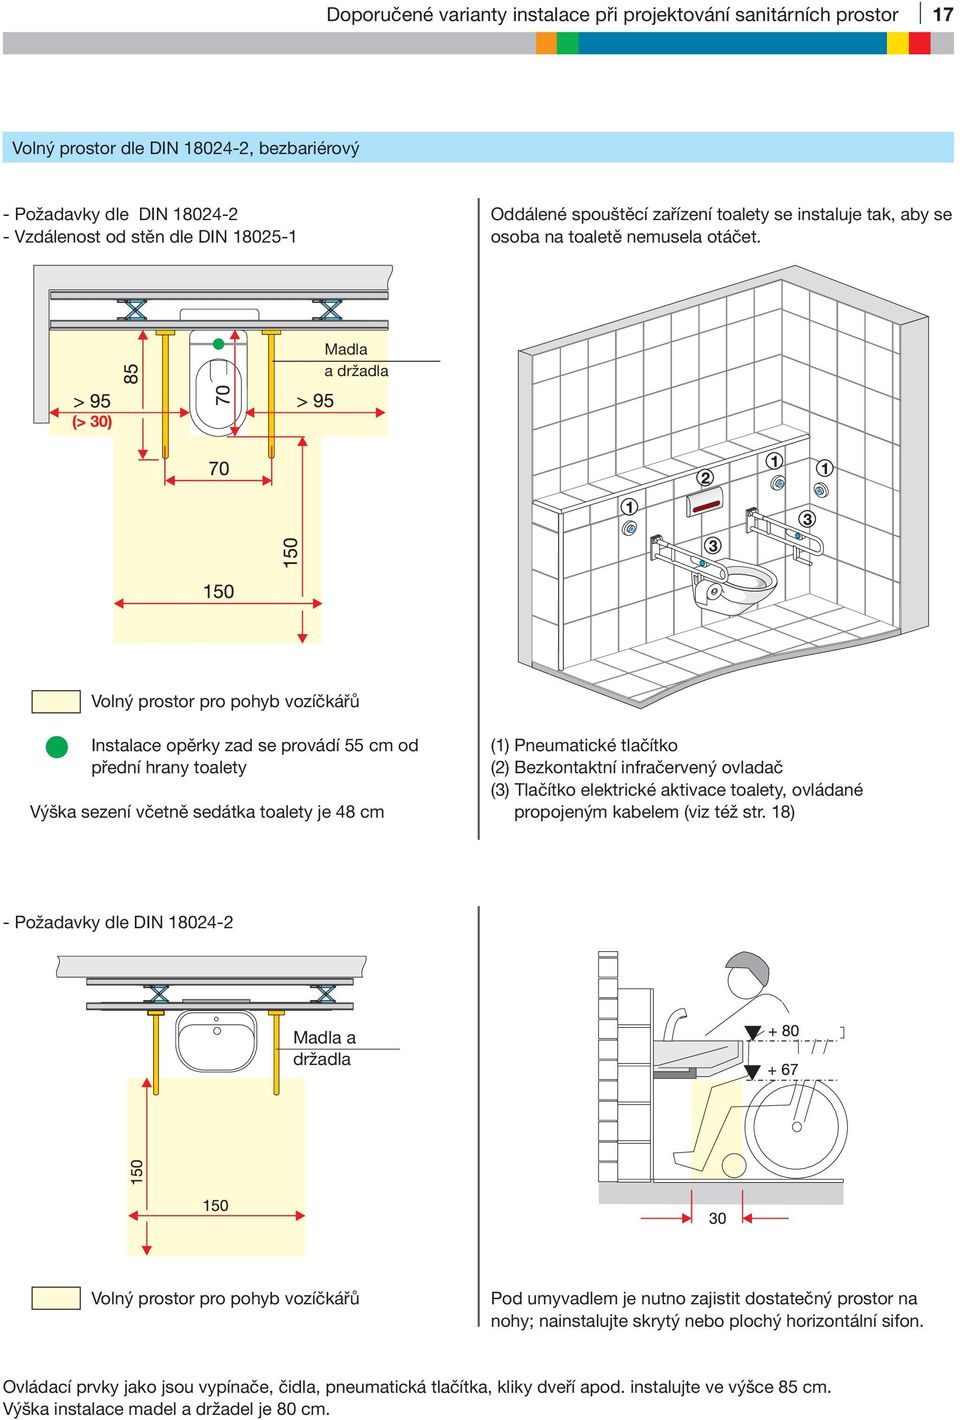 Madla a držadla Volný prostor pro pohyb vozíčkářů Instalace opěrky zad se provádí 55 cm od přední hrany toalety Výška sezení včetně sedátka toalety je 48 cm (1) Pneumatické tlačítko (2) Bezkontaktní